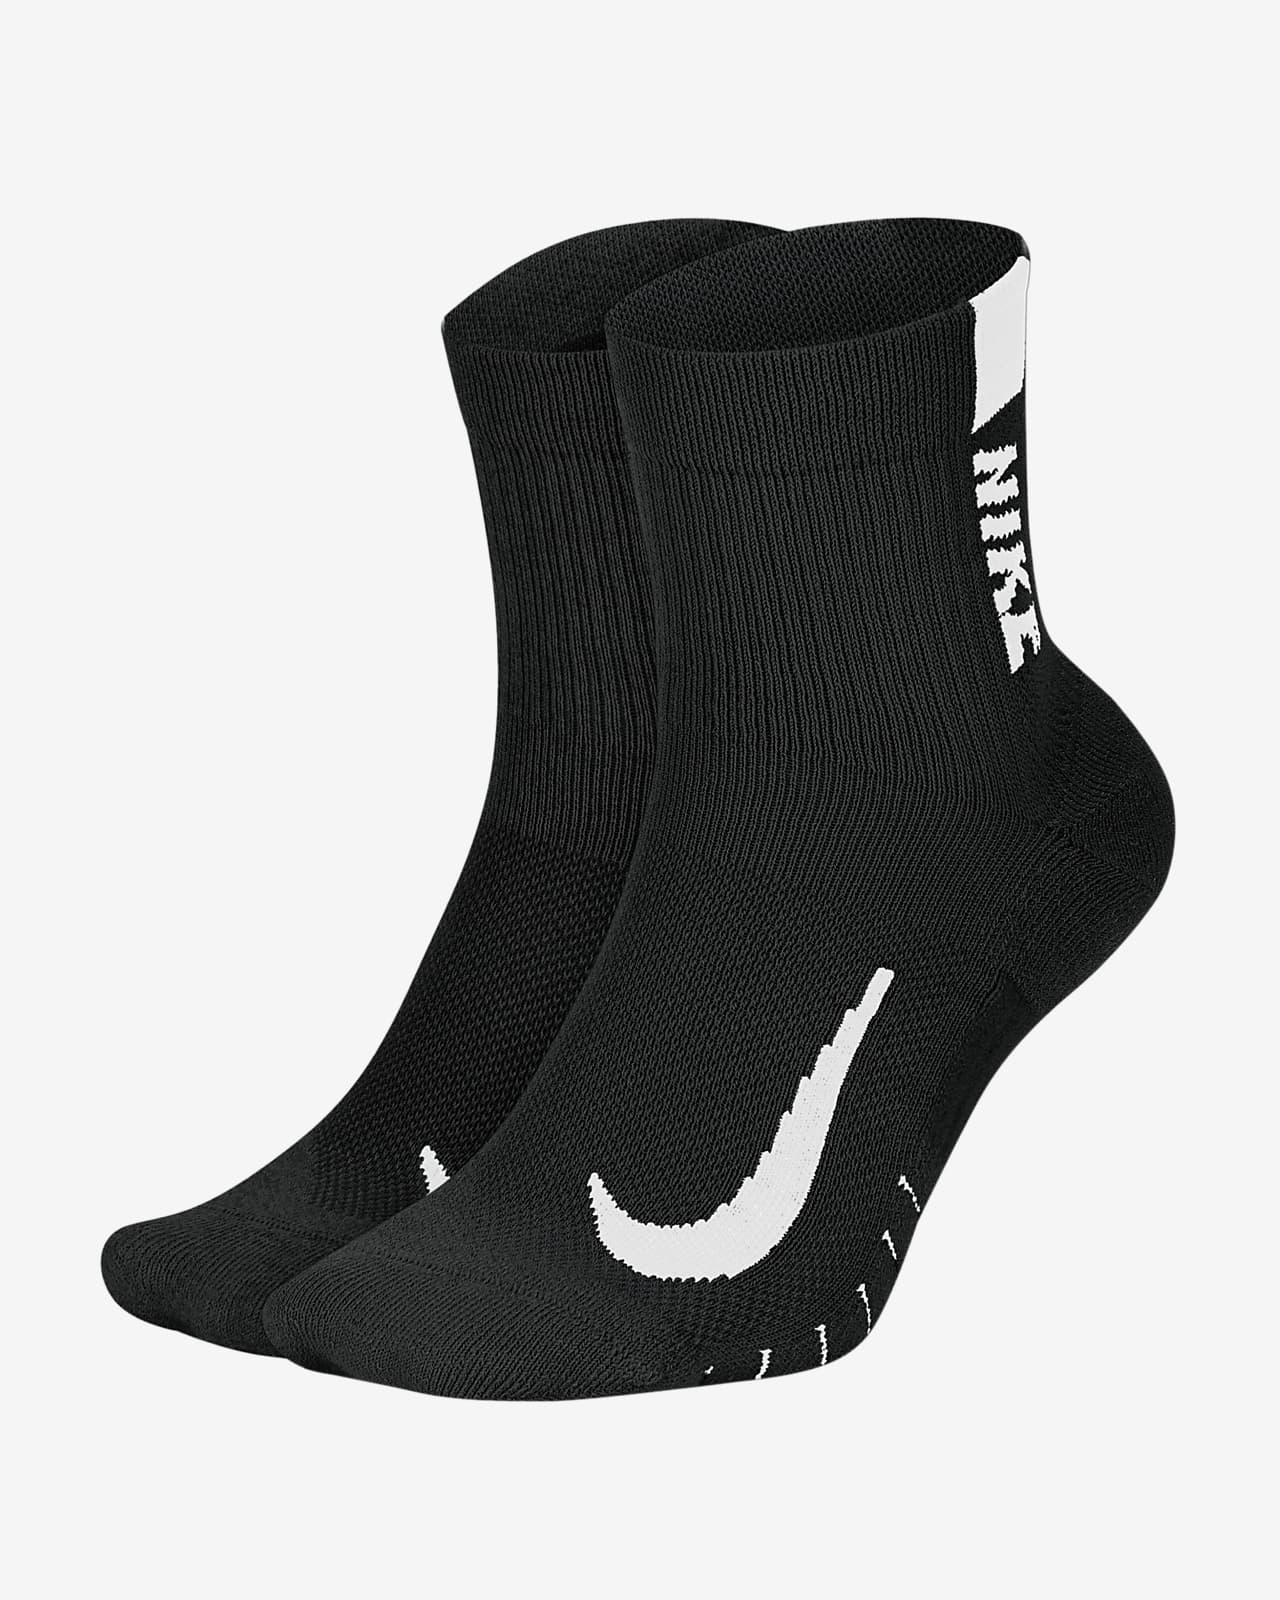 buy nike socks in bulk